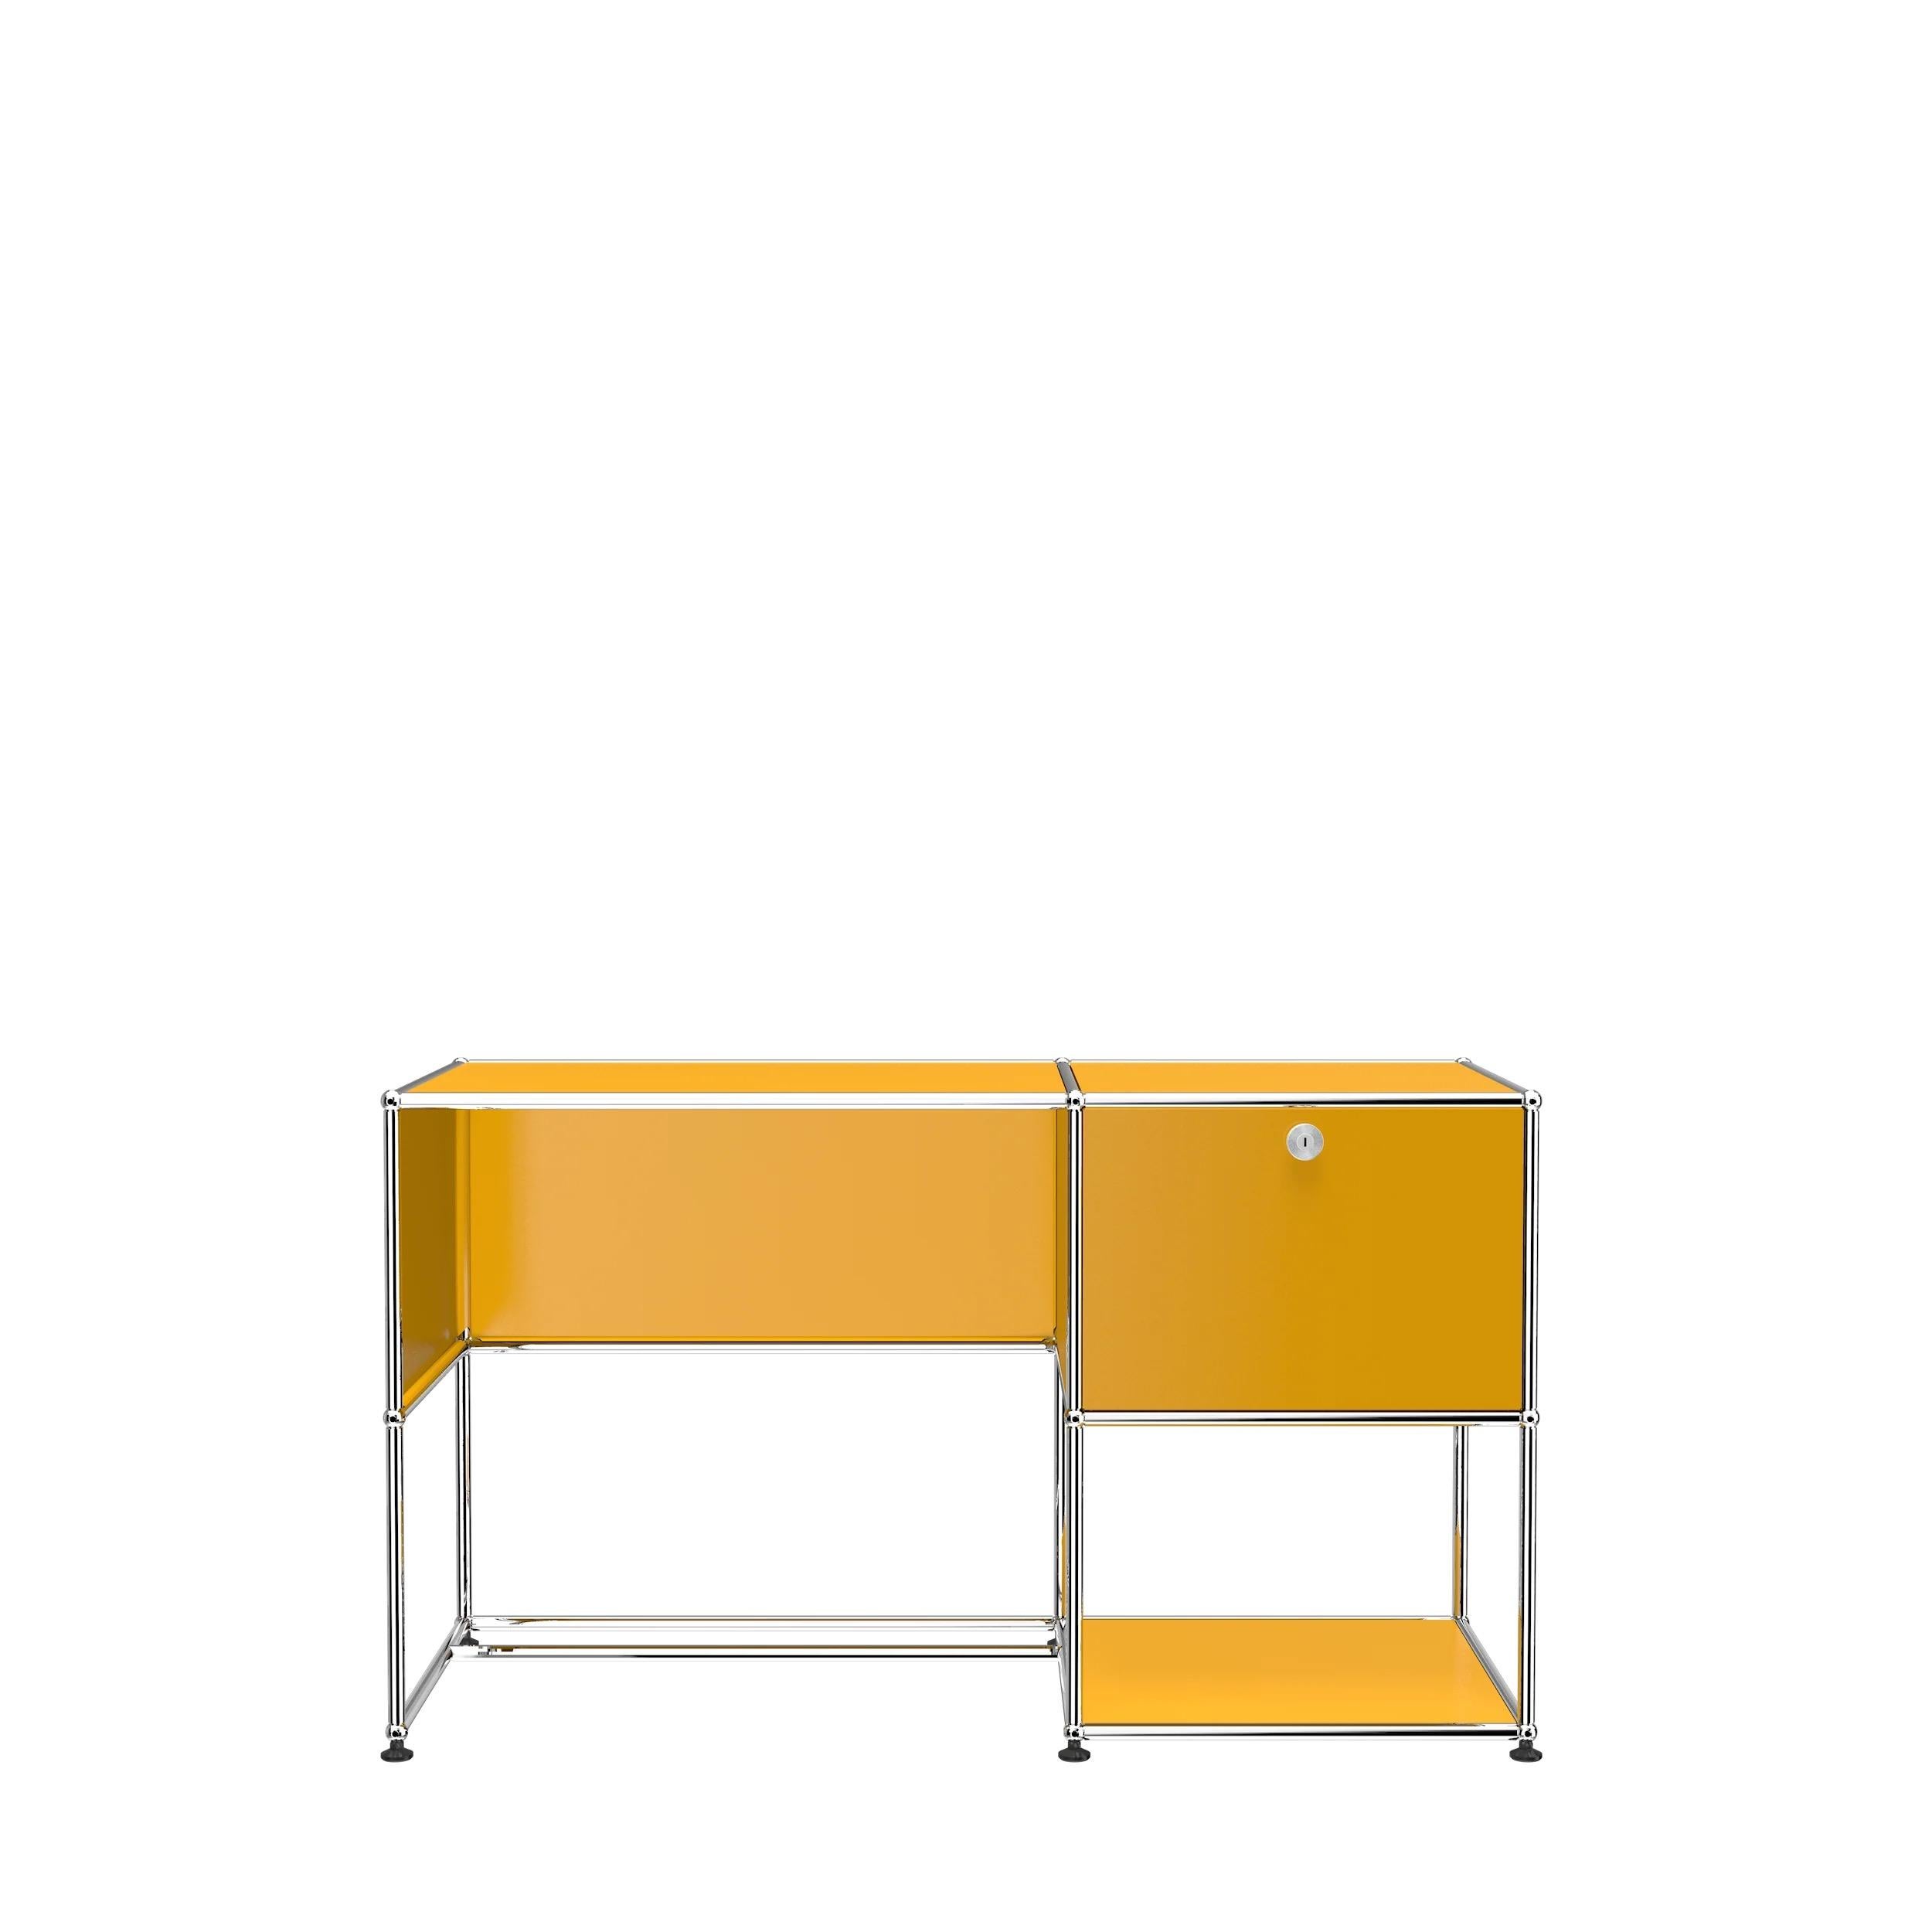 Swiss USM Haller Custom Desk Unit 'A' Designed by Fritz Haller and Paul Schaerer For Sale